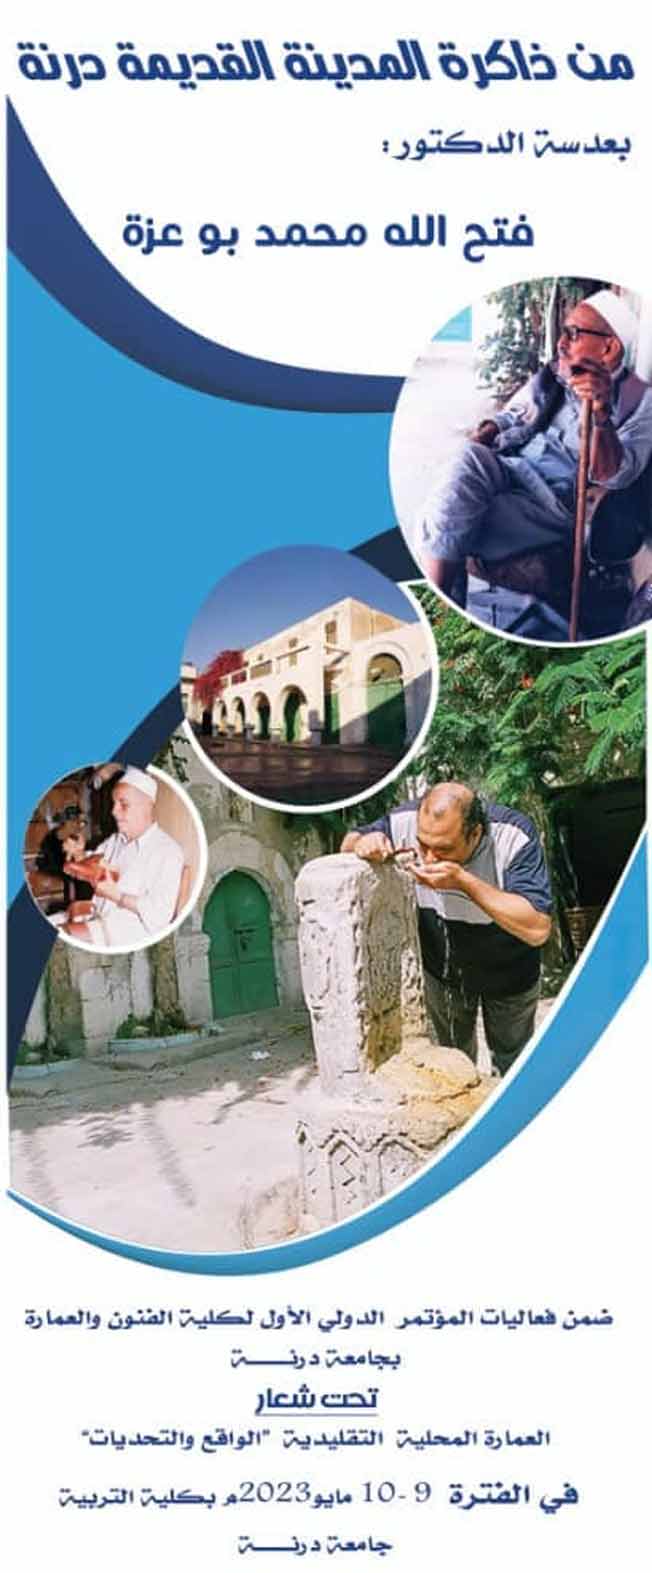 الملصق الإعلاني لمعرض «ذاكرة المدينة القديمة درنة» للدكتور فتح الله بوعزة. (جامعة درنة).